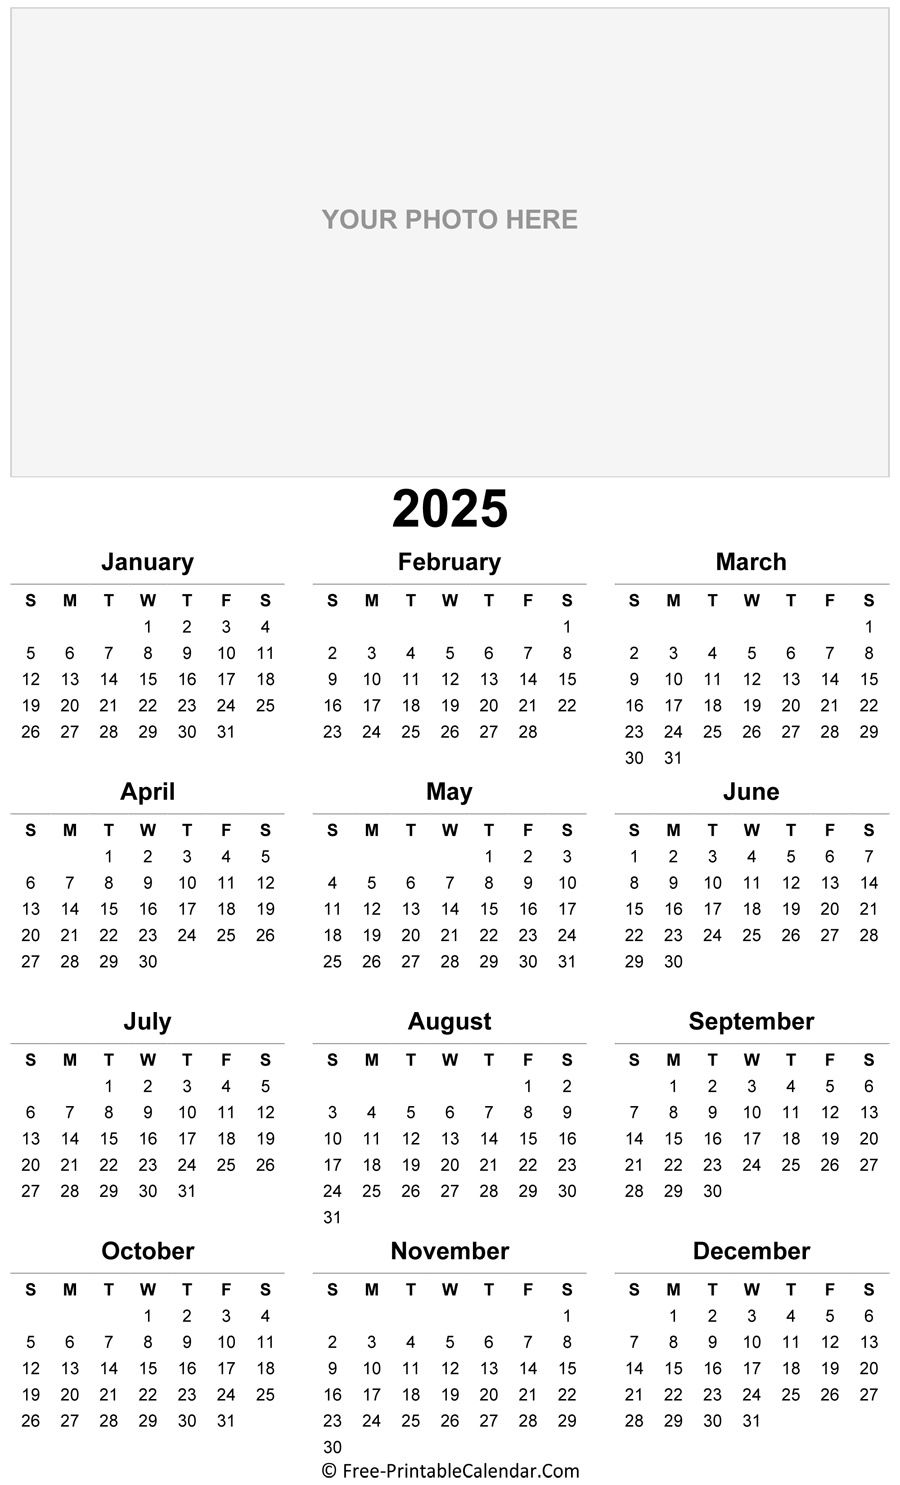 2025-photo-calendar-templates